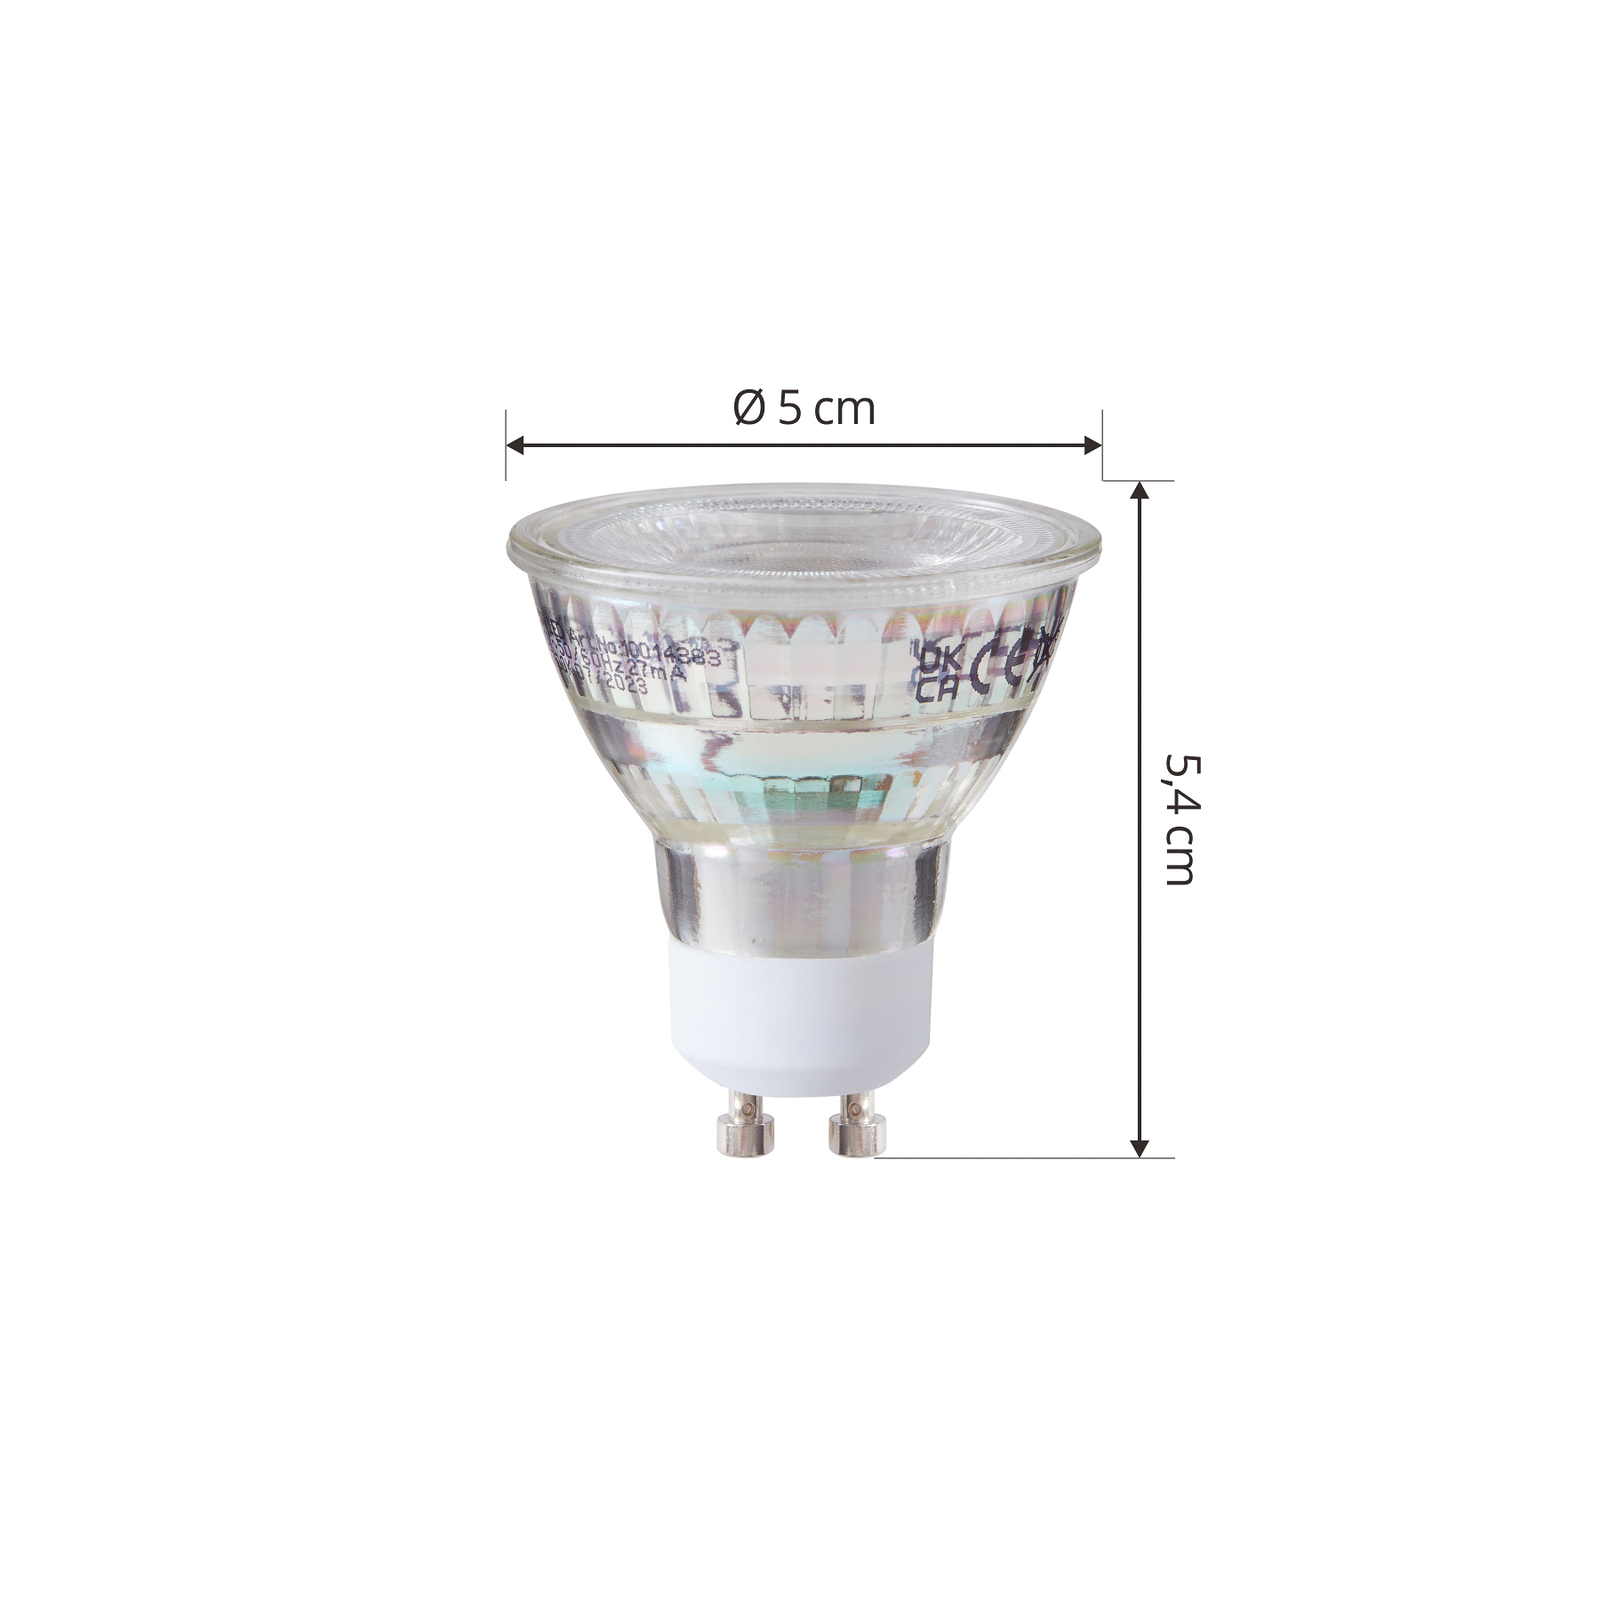 Conjunto de 2 lâmpadas LED Arcchio GU10 2.5W 2700K 450lm de vidro